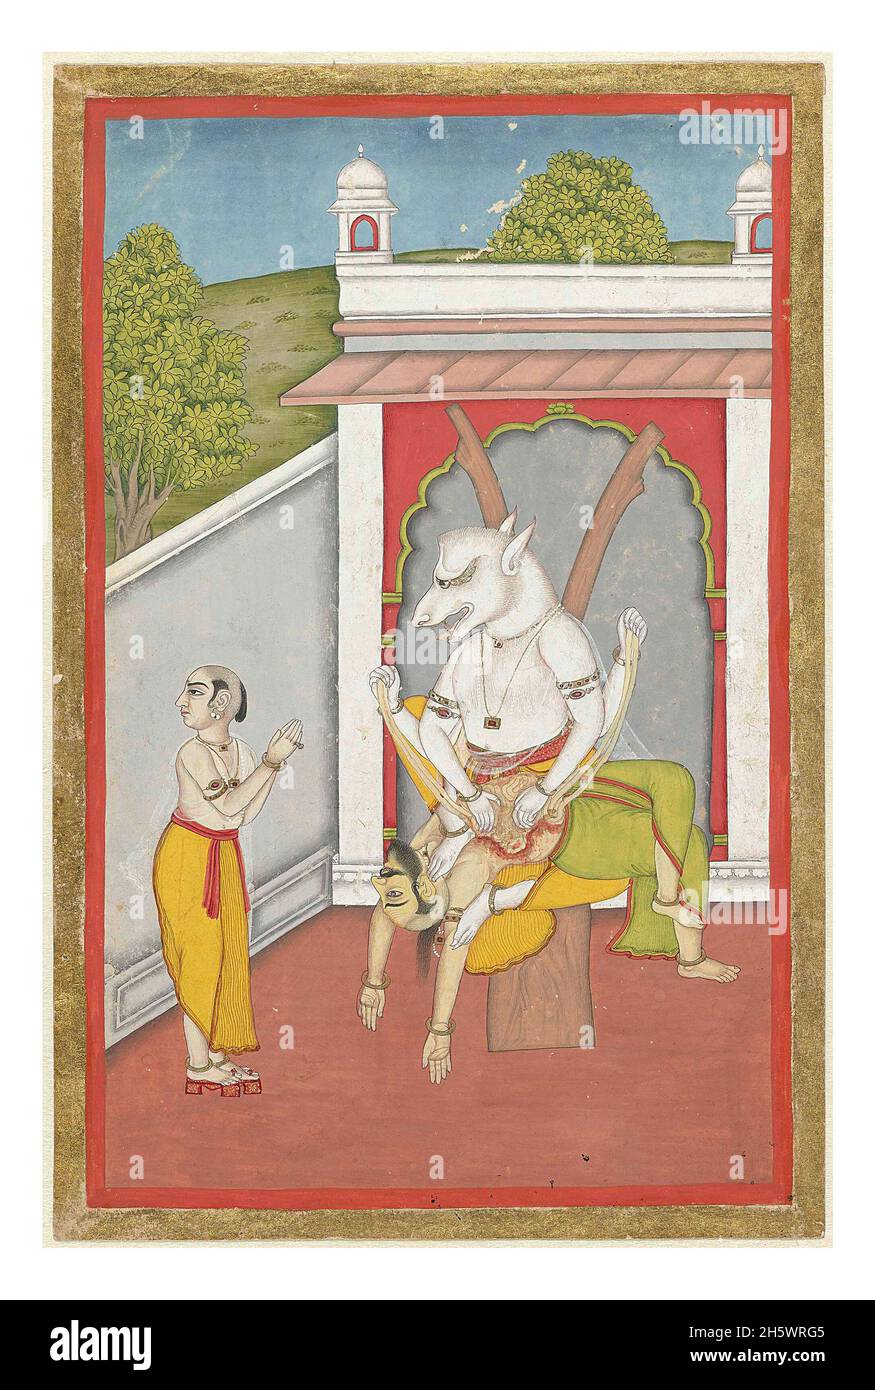 Narasimha, l'incarnation homme-lion de Vishnu.A l'entrée d'un palais se trouve Vishnu dans son incarnation (avatara) comme homme-lion avec un homme sur ses genoux dont il a ouvert les entrailles; devant lui un homme révérencieux (le prince Prahlada) avec des mains pliées.Autour de la scène une étroite orange et une étroite bordure dorée.Version optimisée numériquement/améliorée d'une image historique. Banque D'Images